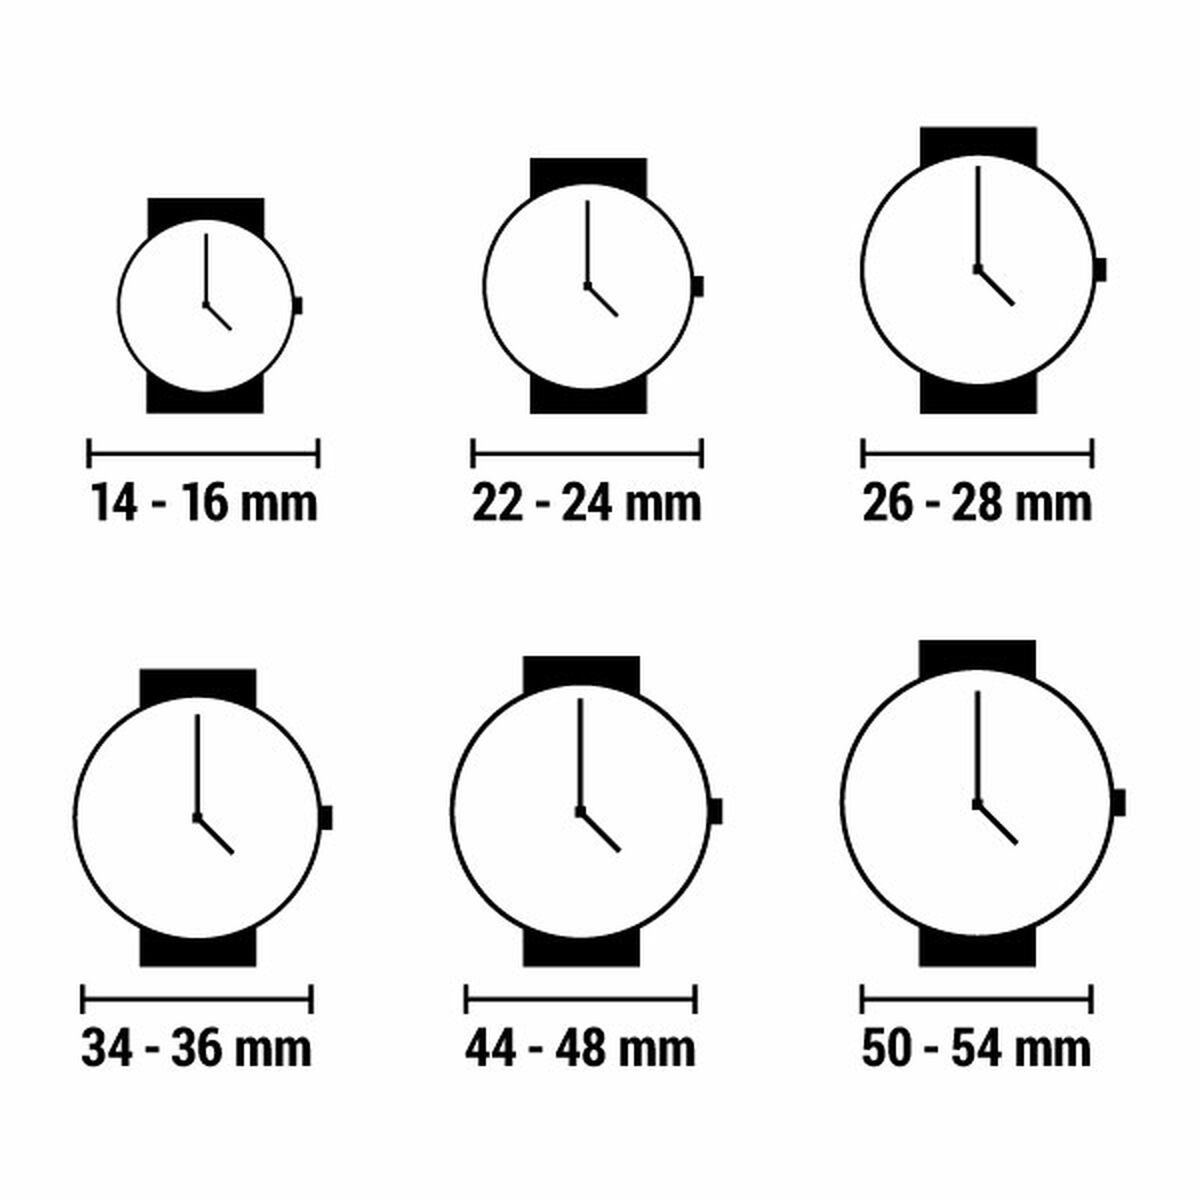 Horloge Heren Maserati R8823121001 (Ø 44 mm)